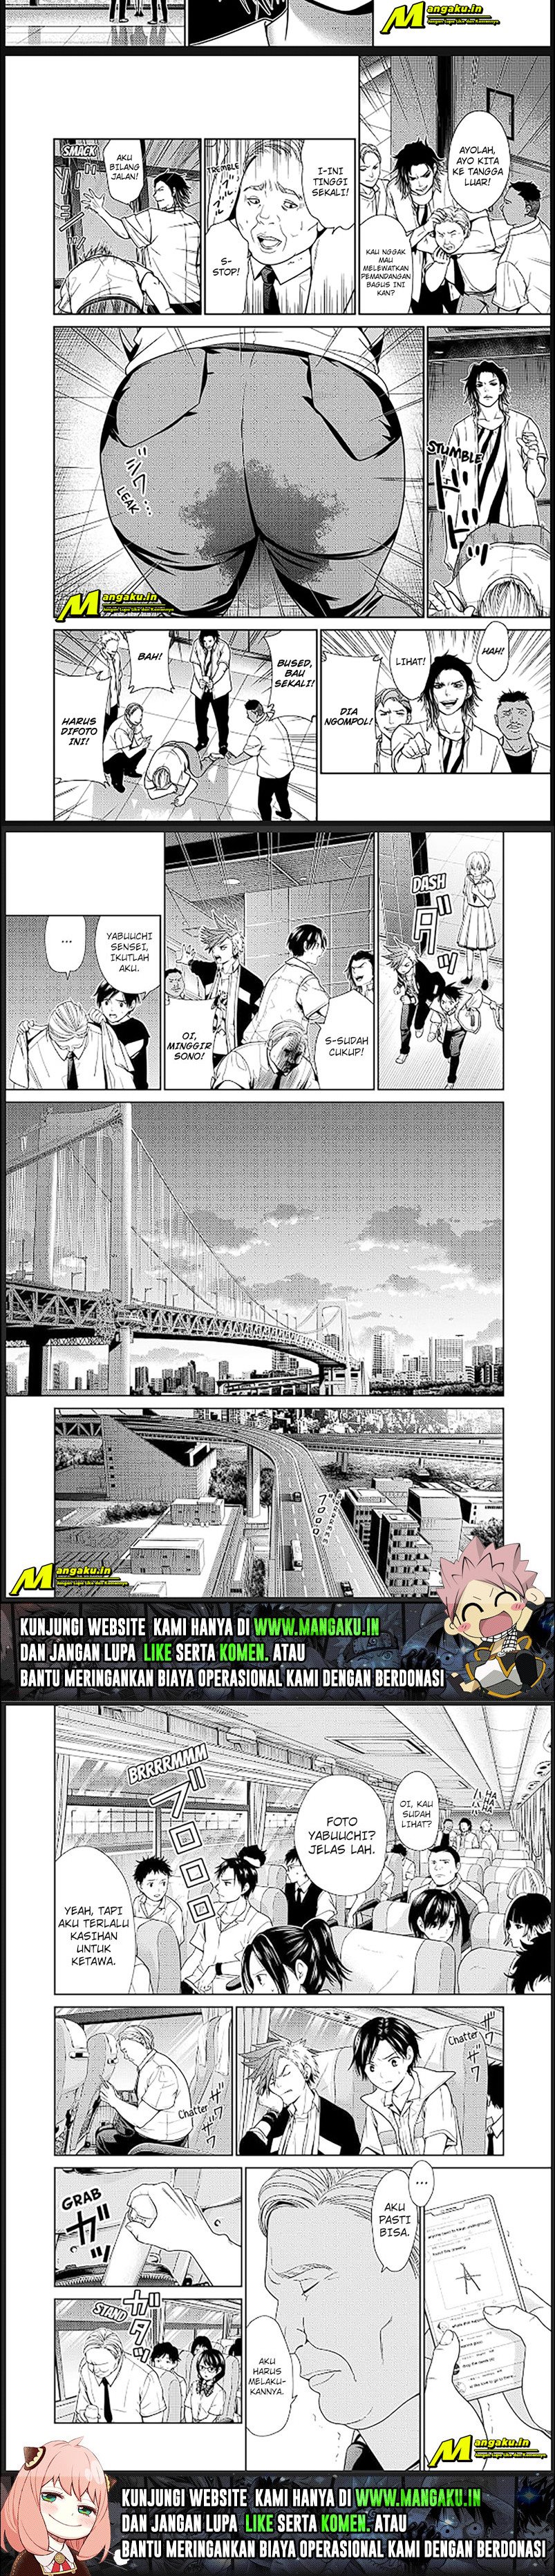 Spoiler Manga Shin Tokyo 3